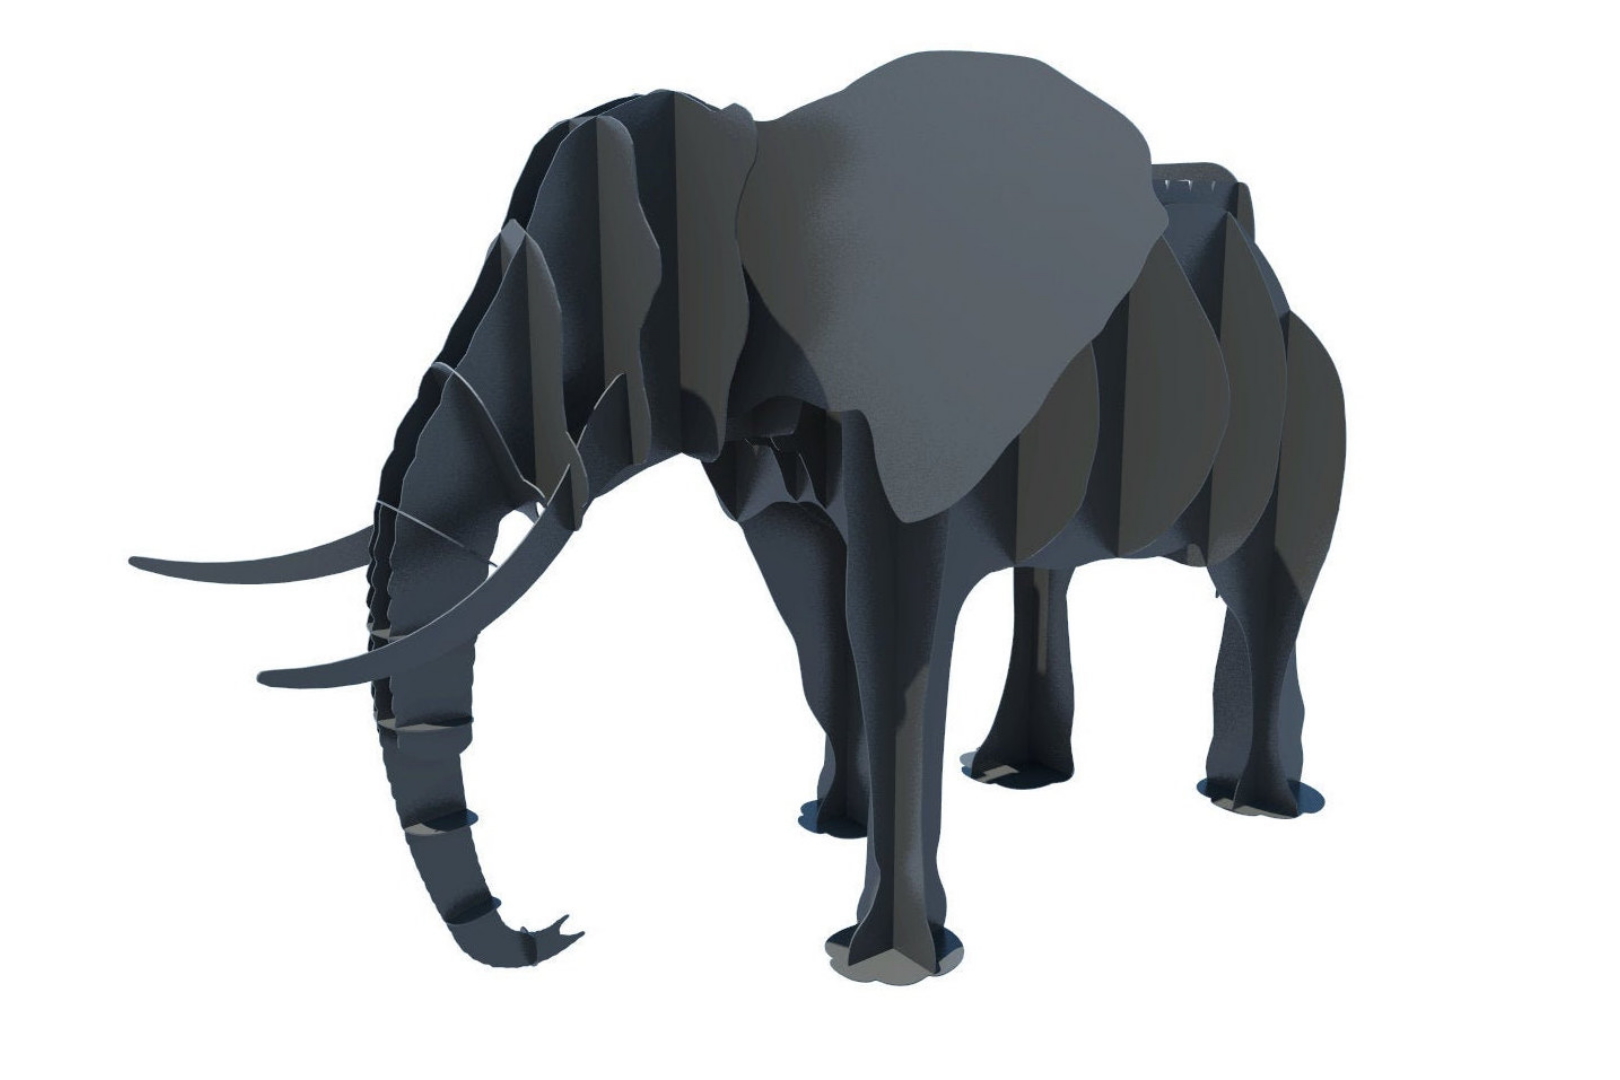 Мангал Слон объемный 3D